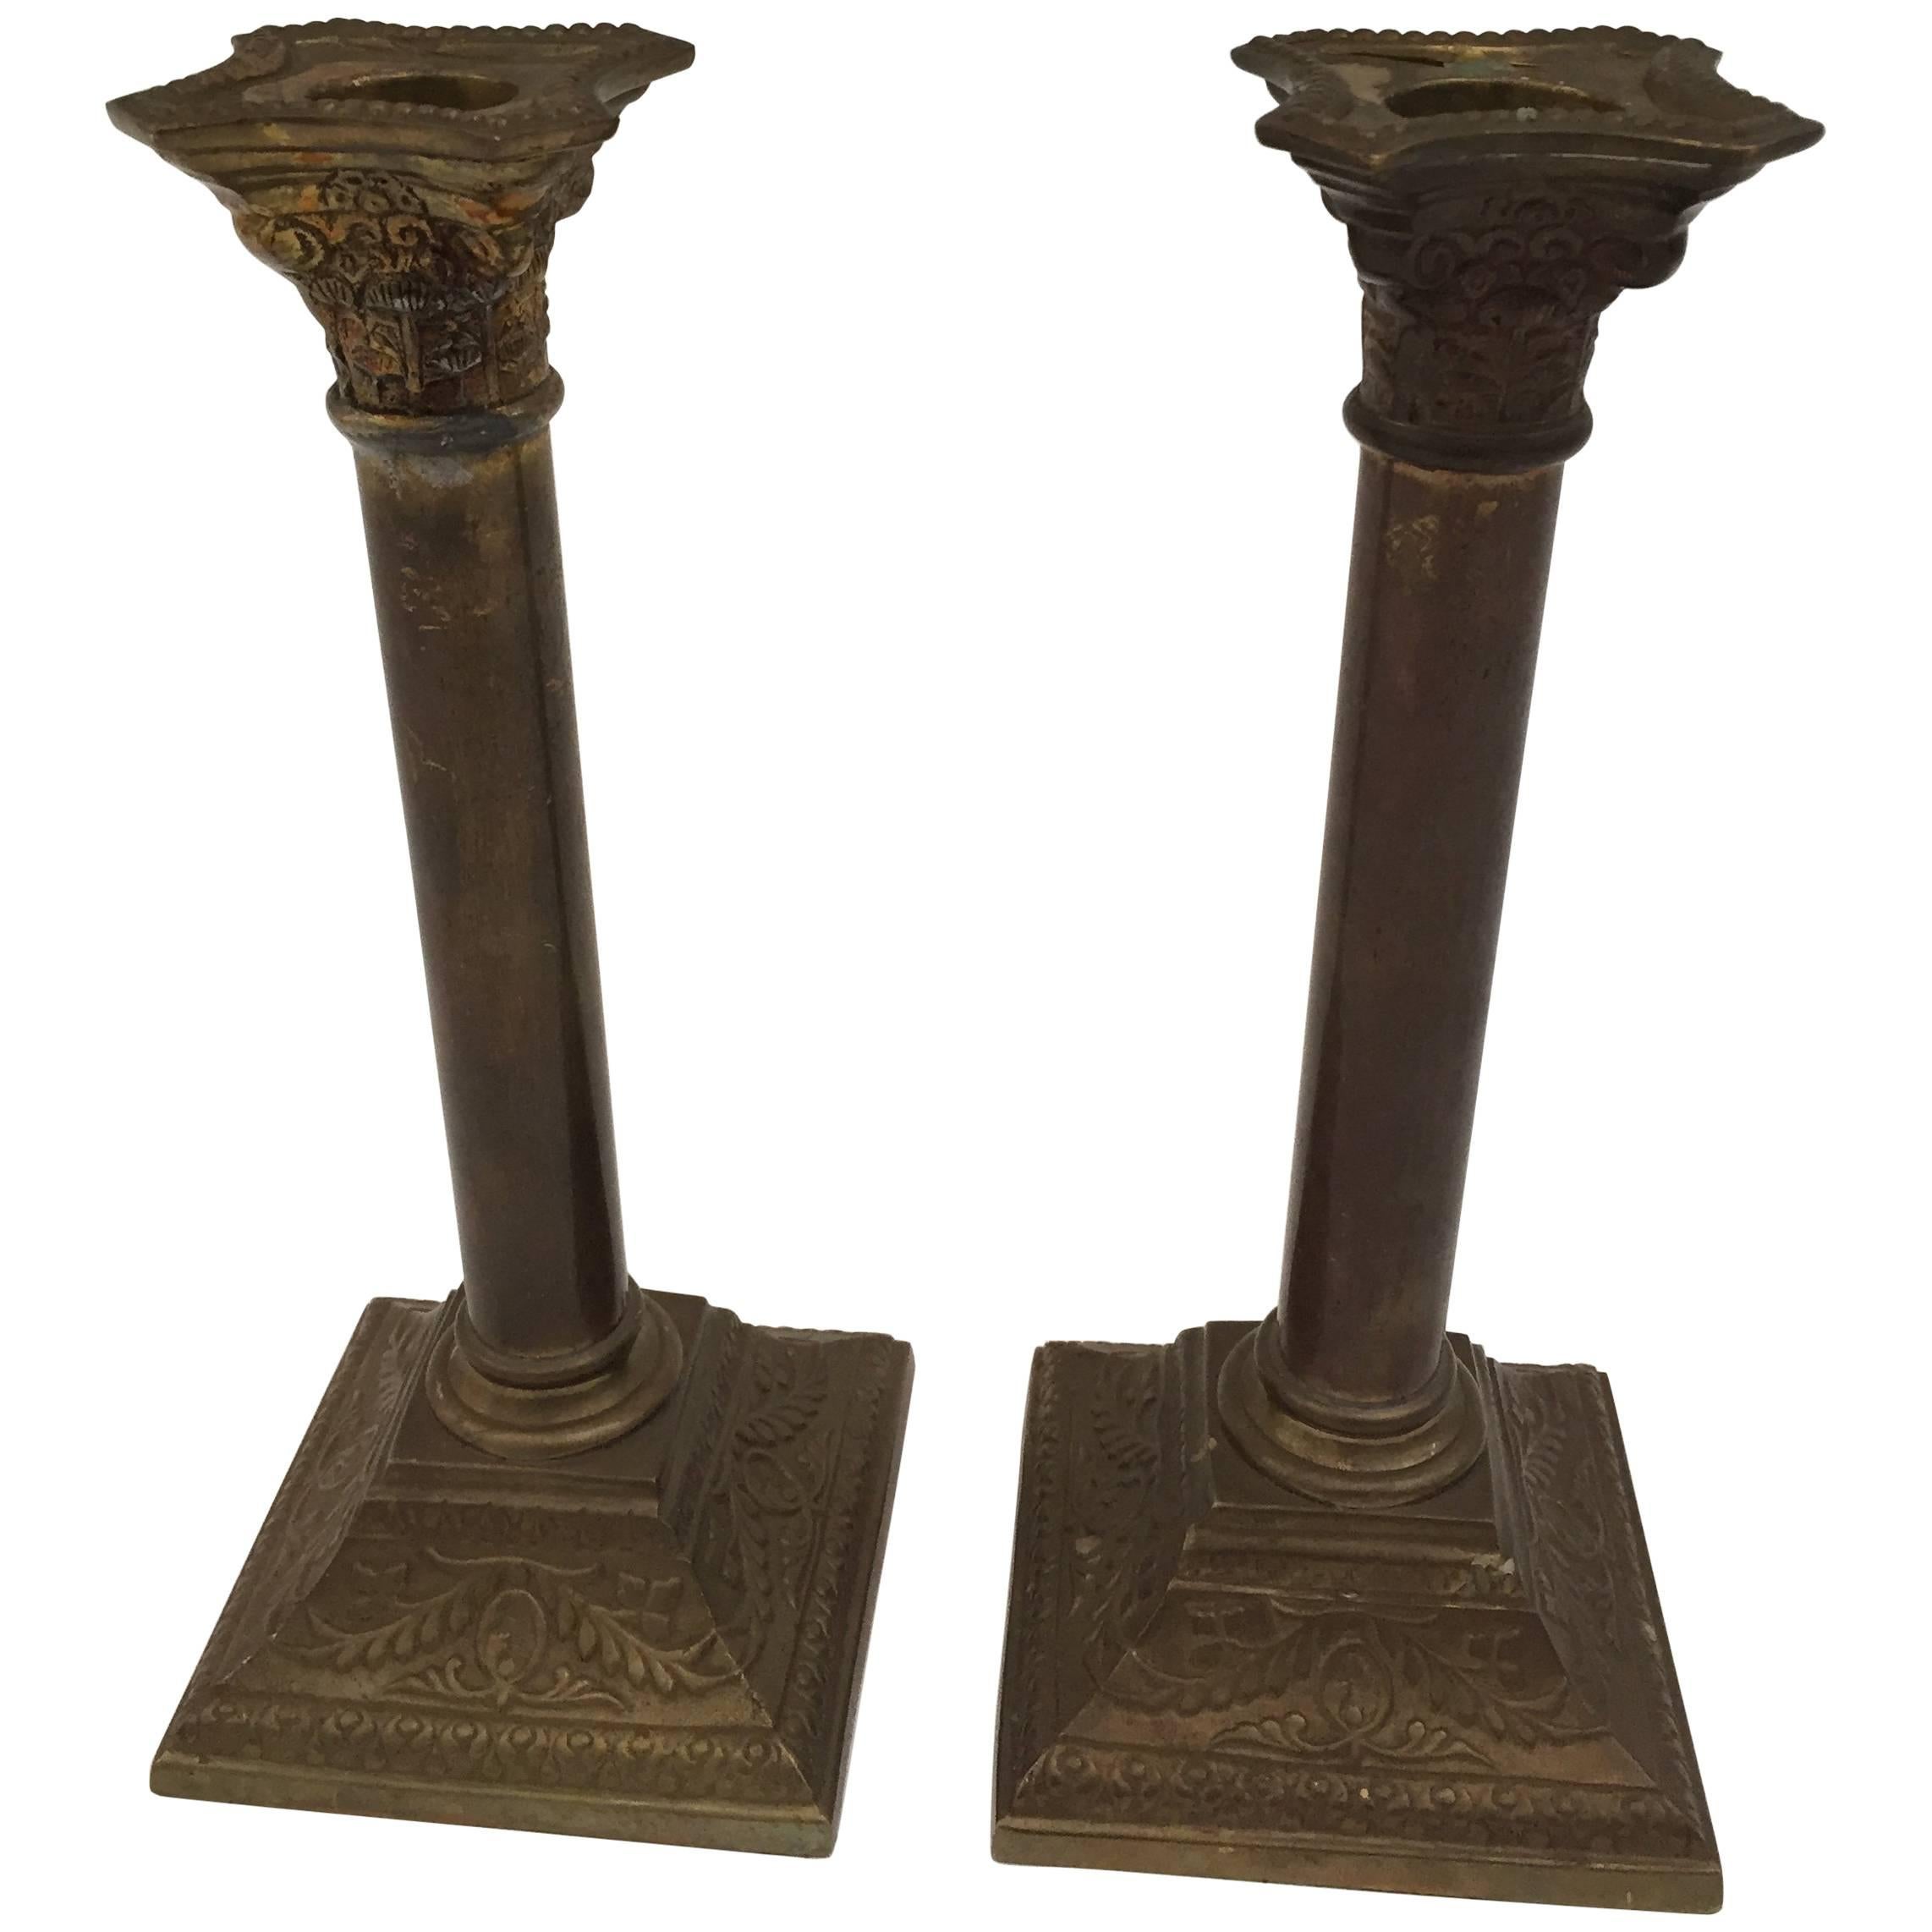 Une très belle paire de chandeliers en laiton de style néoclassique George III, avec des bases carrées et des tiges en forme de colonne supportant des coupelles en forme d'urne.
Les chandeliers sont en forme de colonnes, les bases et le sommet sont